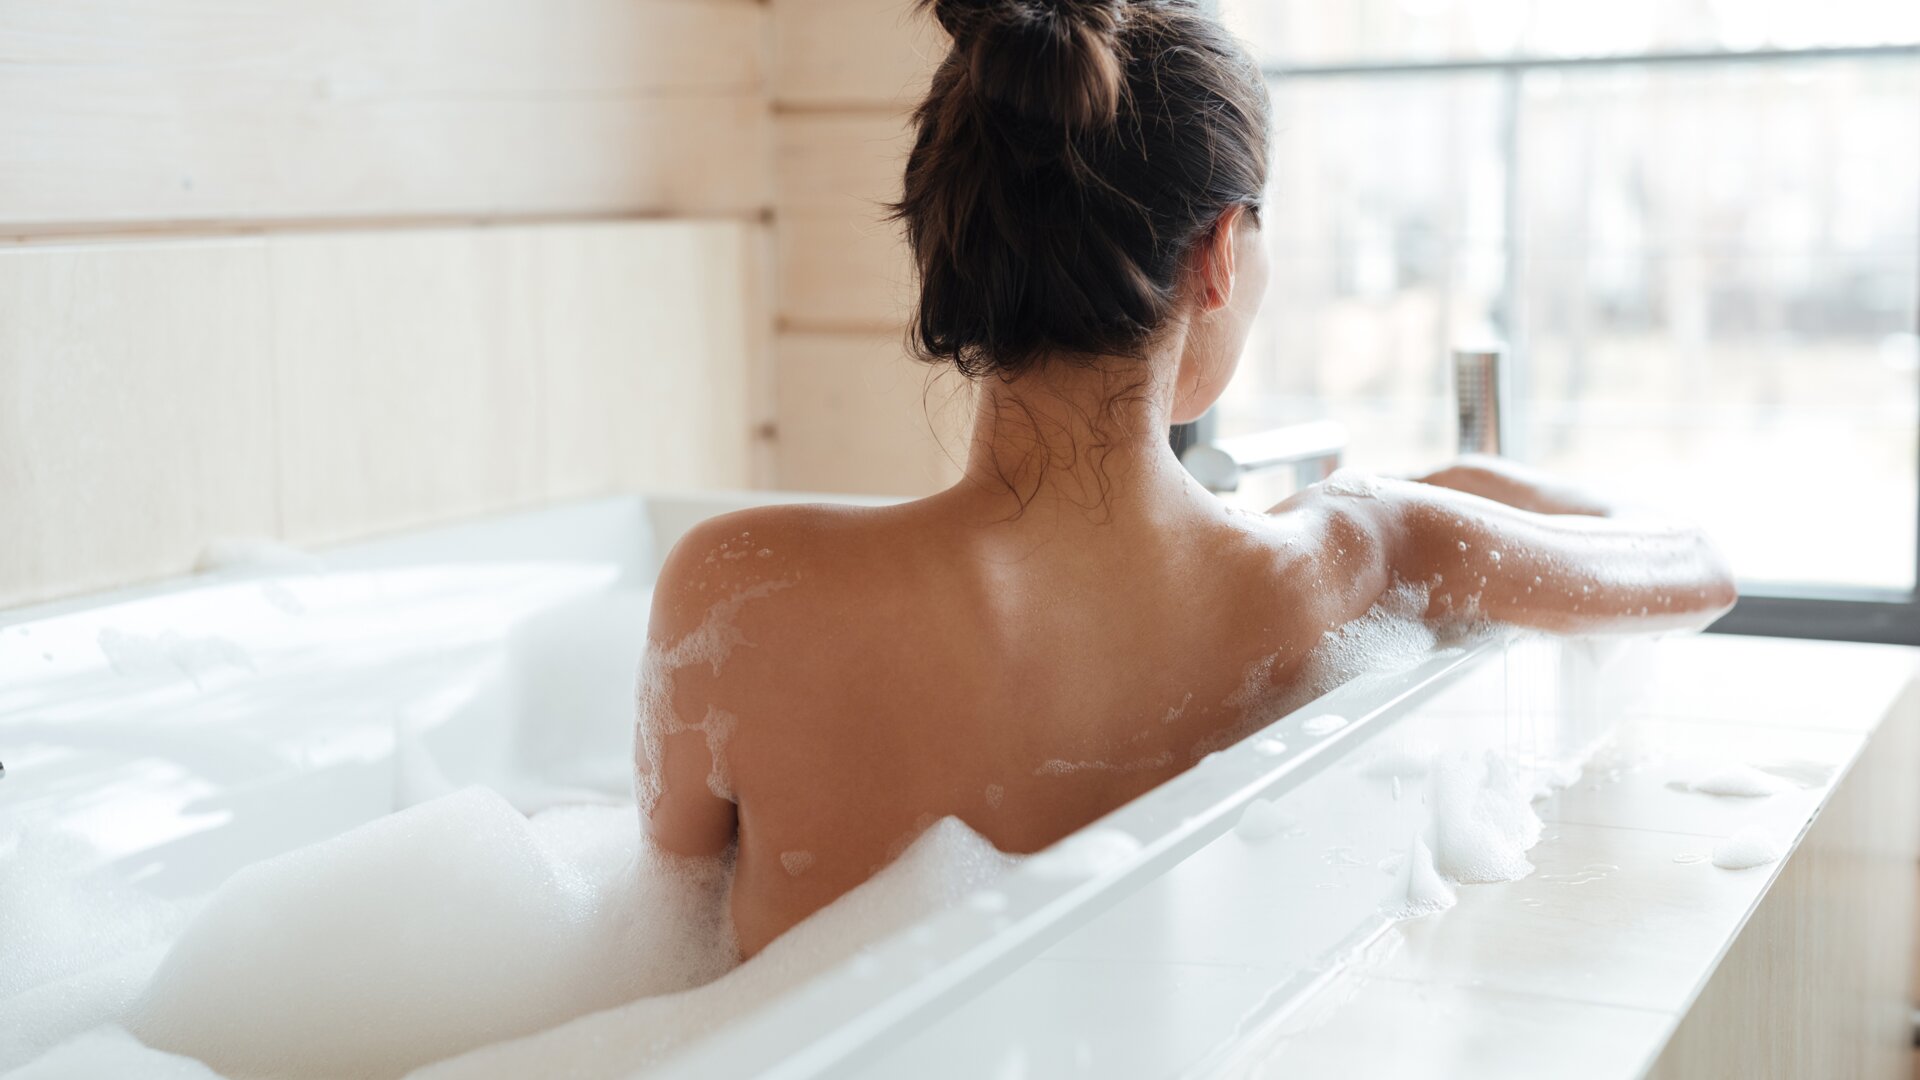 Achterkant van een vrouw zittend in een witte badkuip gevuld met schuim die uit het raam naar de natuur kijkt.